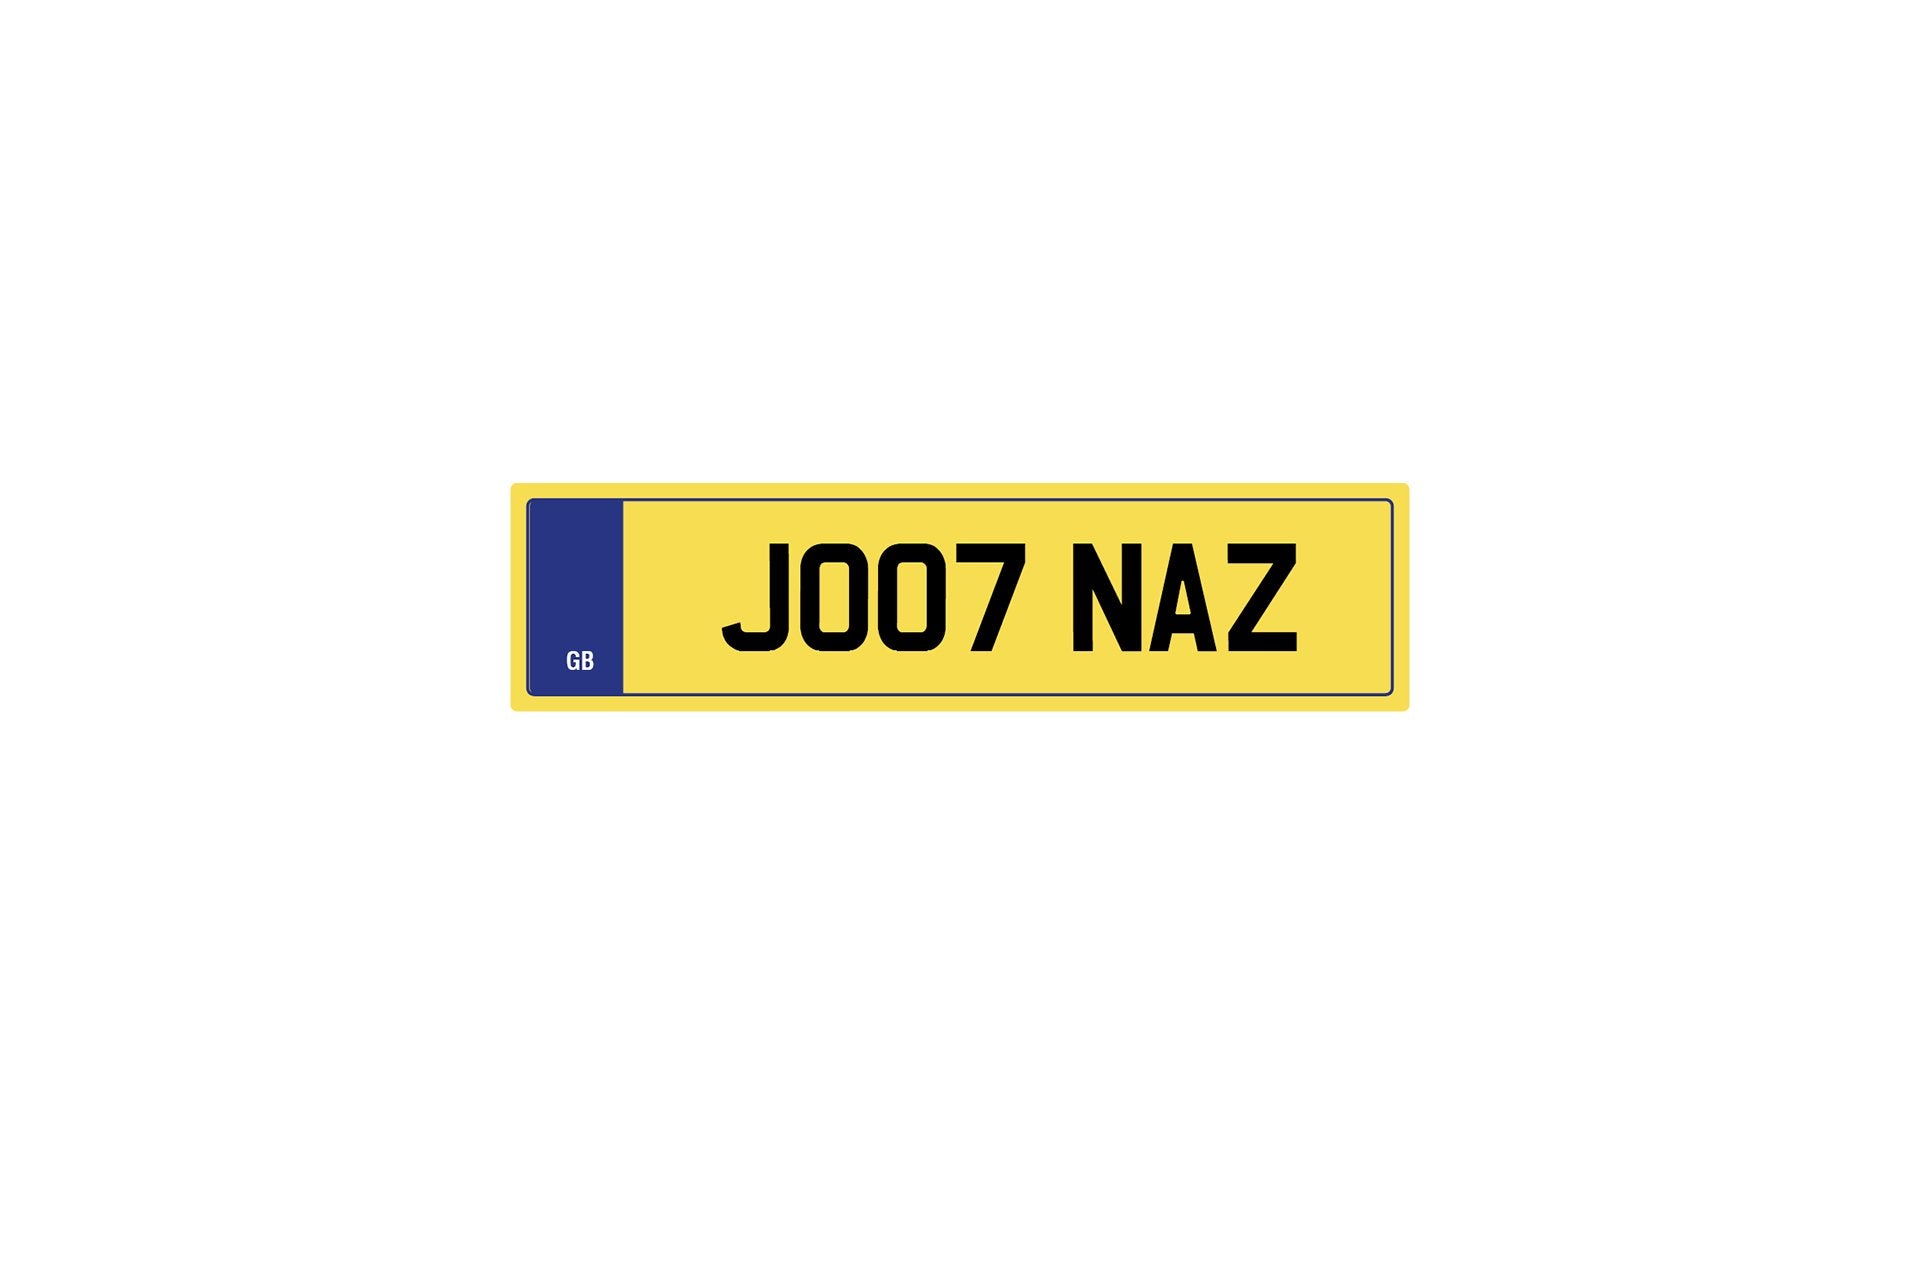 Private Plate J007 Naz by Kahn - Image 205